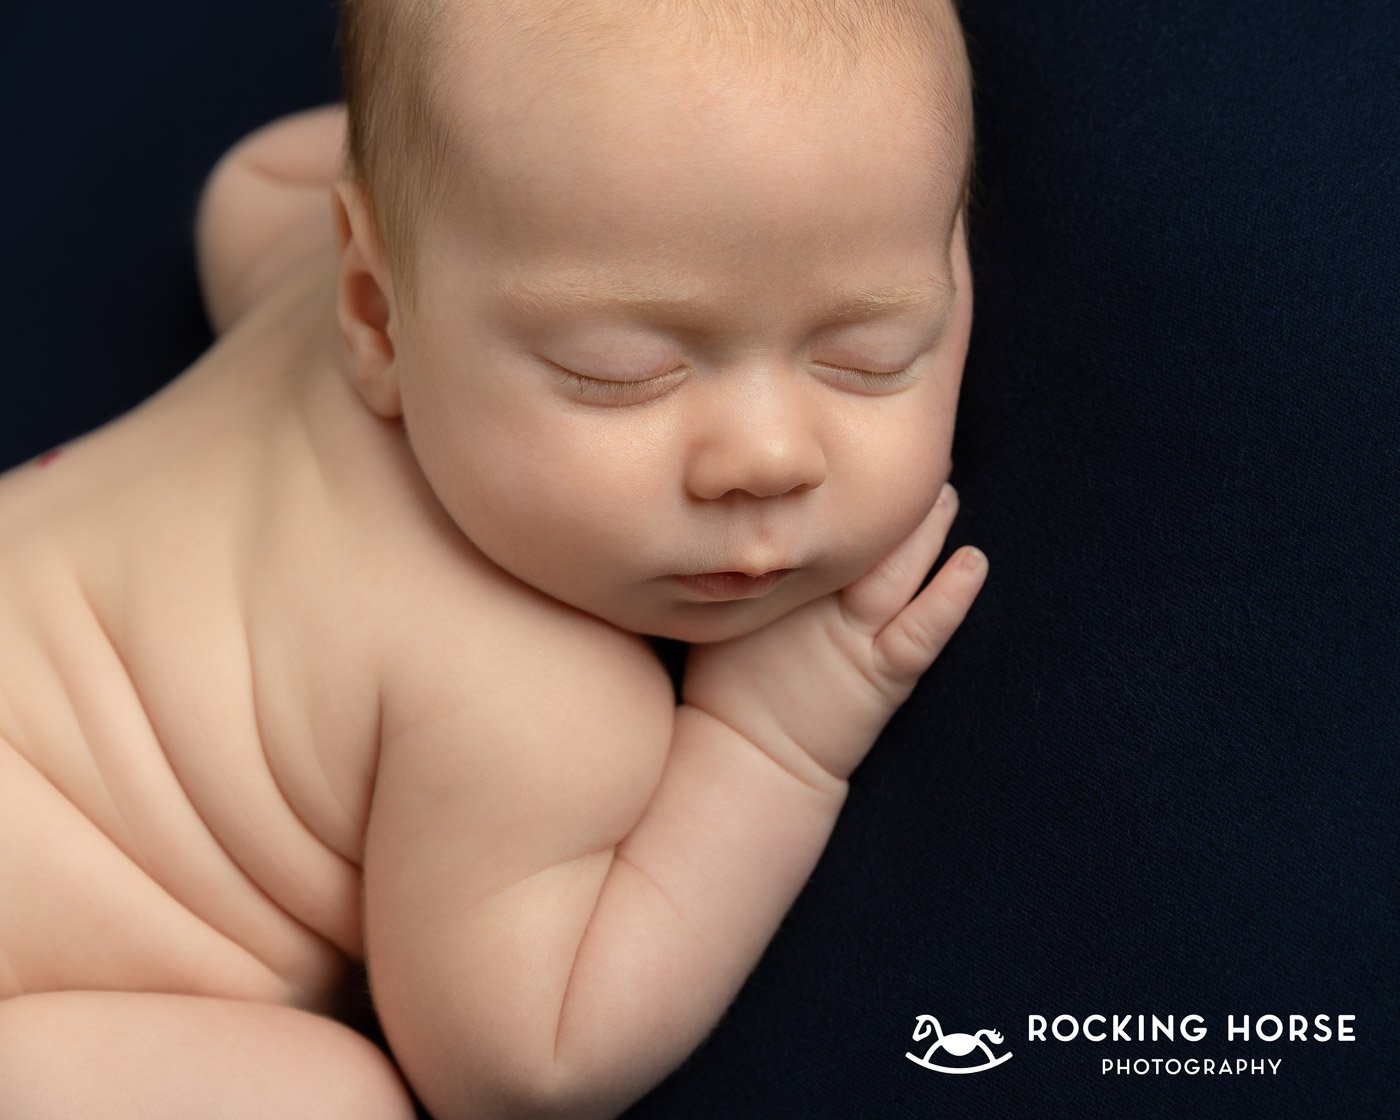 curled-up-newborn-baby-hand-under-cheek 